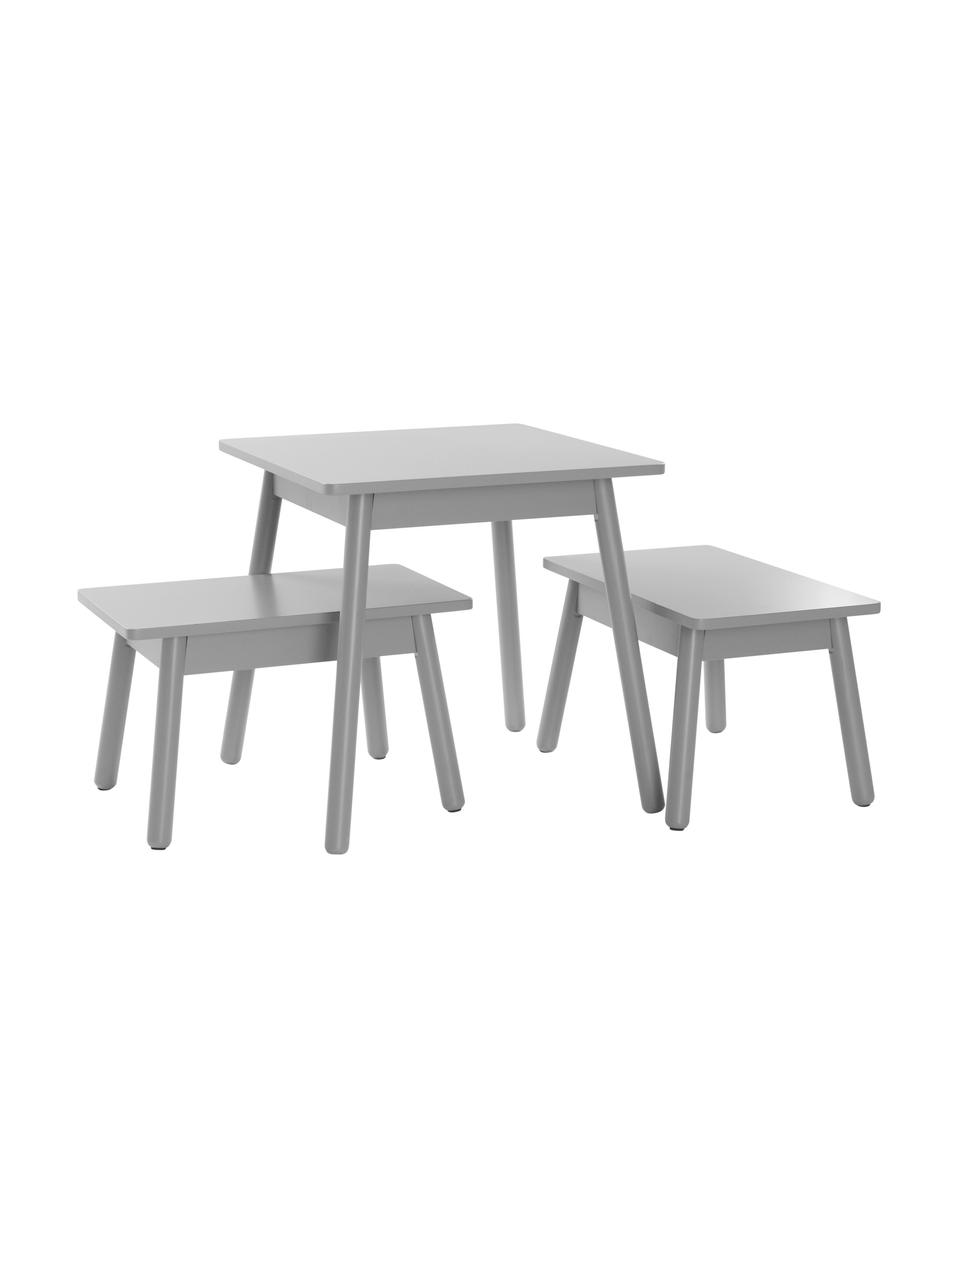 Sada dětského stolu Kinna Mini, 3 díly, Borovicové dřevo, MDF deska (dřevovláknitá deska střední hustoty), Šedá, Sada s různými velikostmi